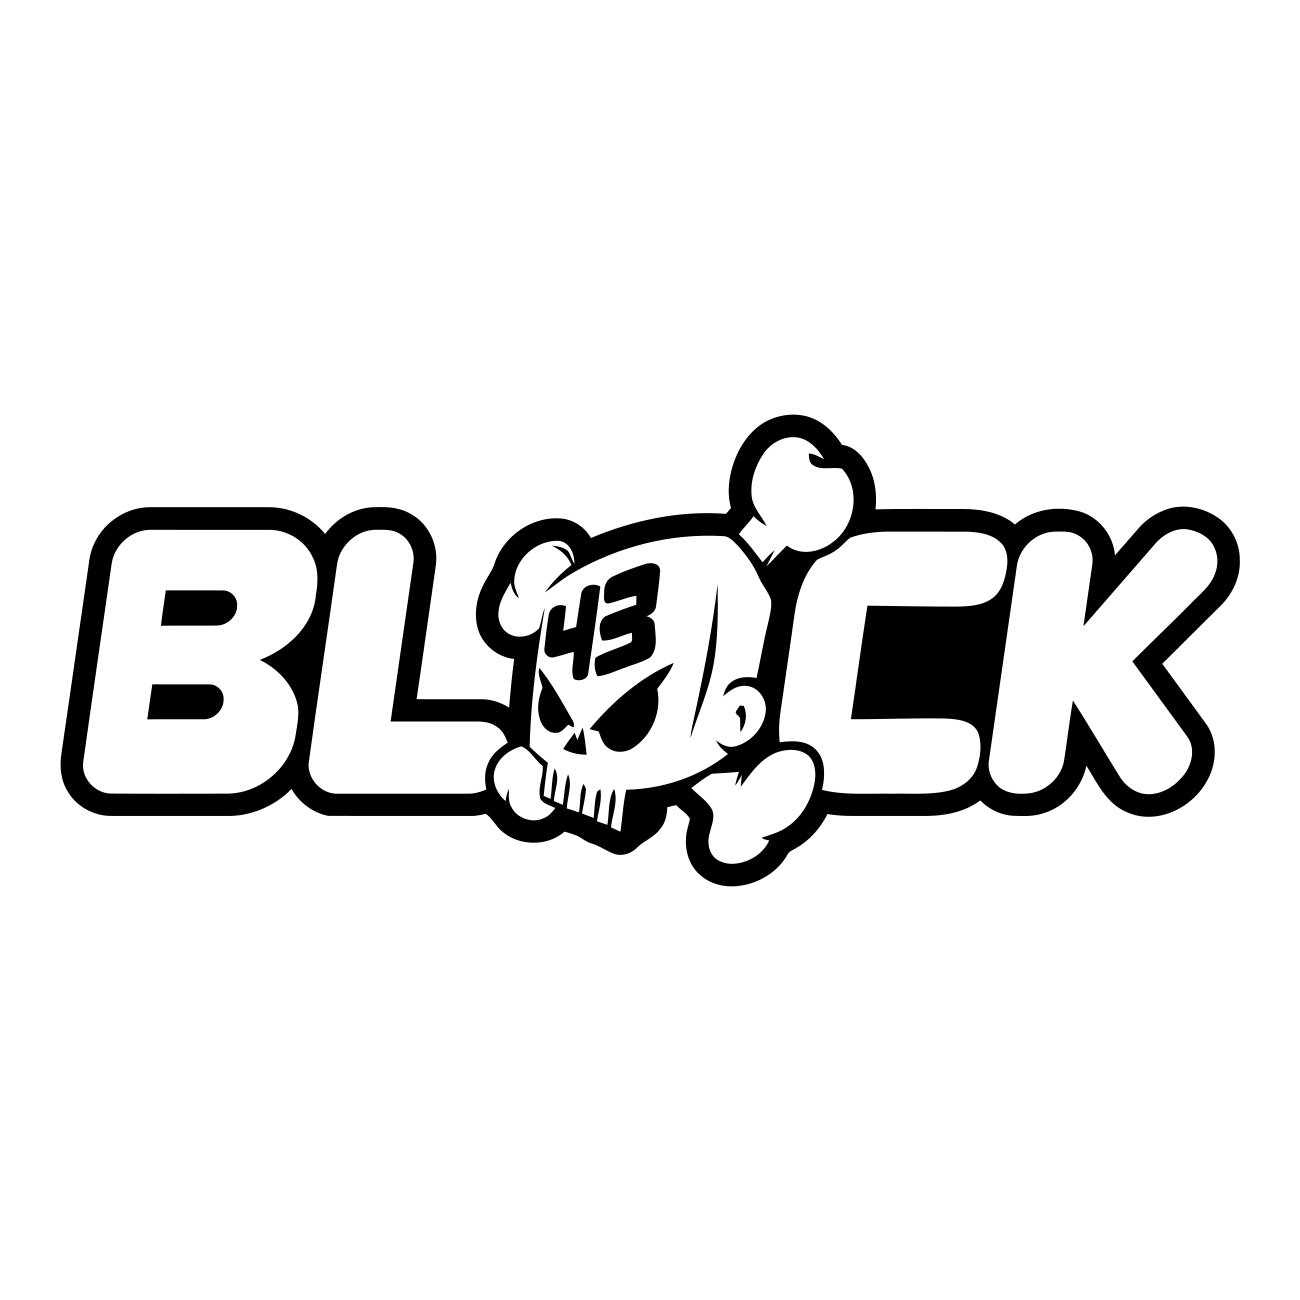 Ken Block logo 2